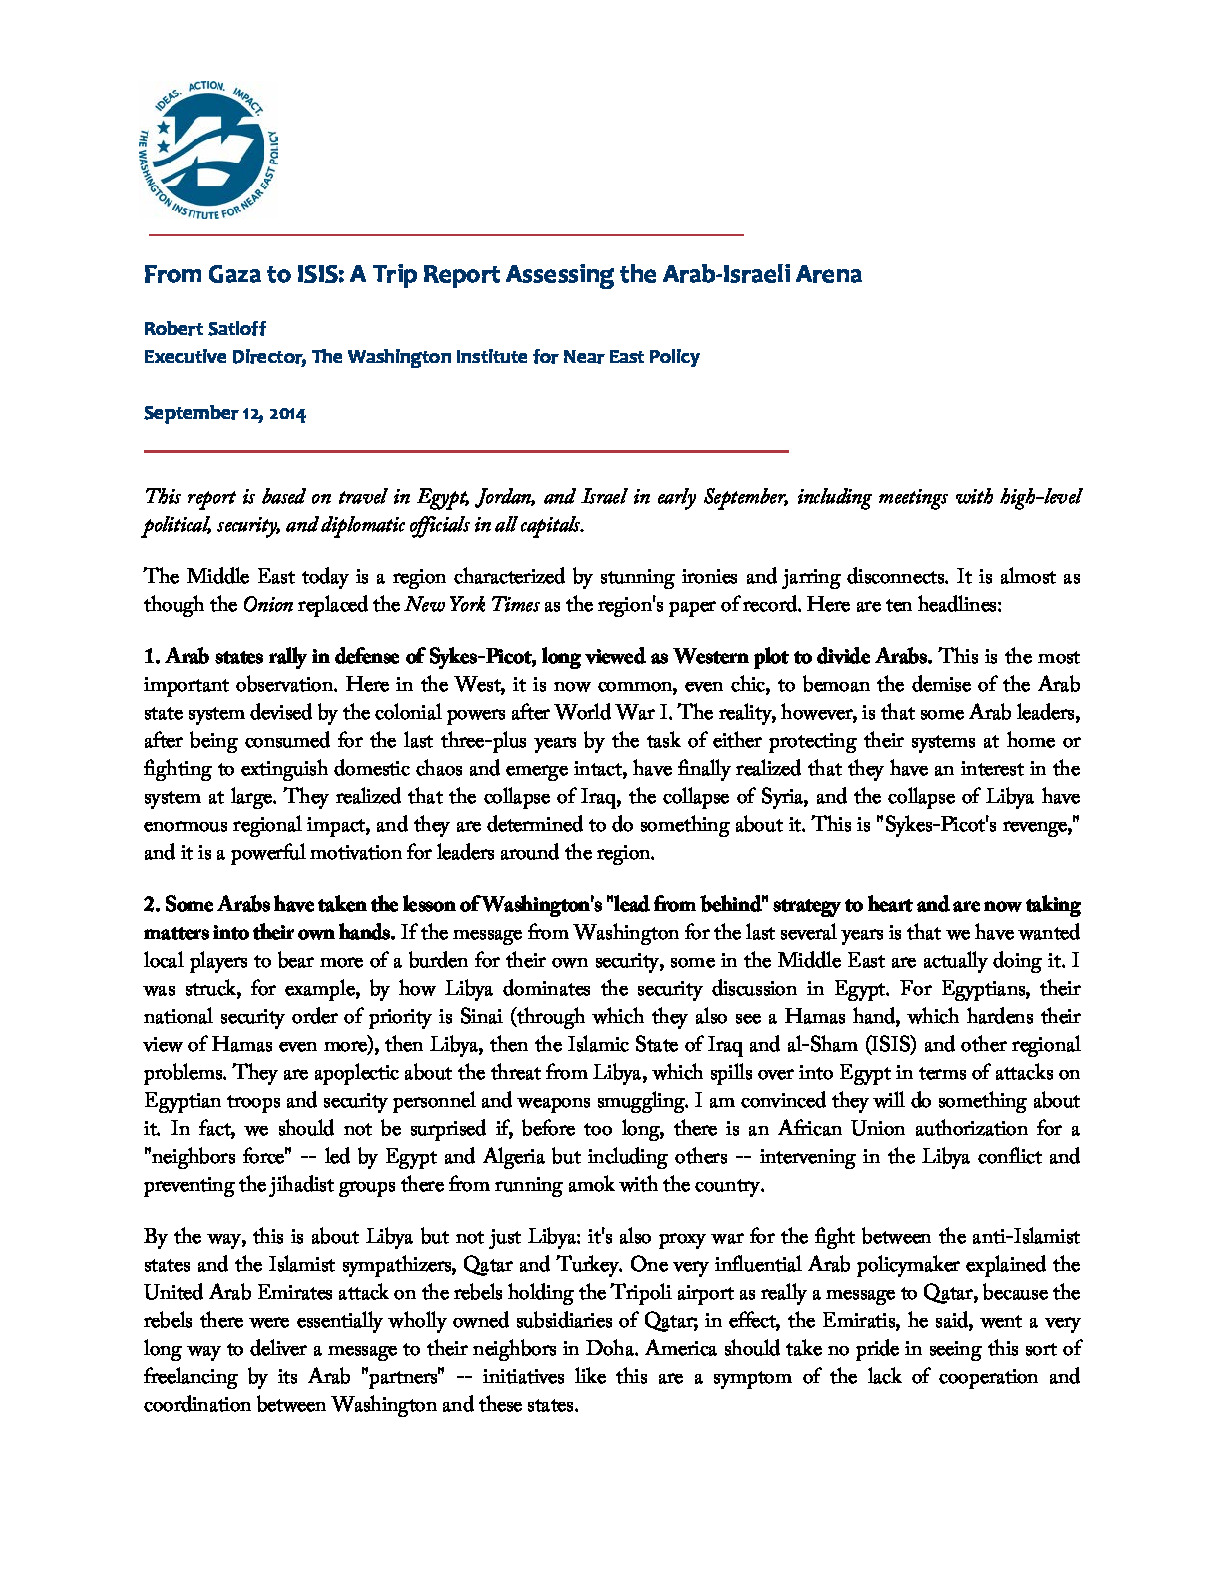 Satloff20140912-GazaTripReport.pdf